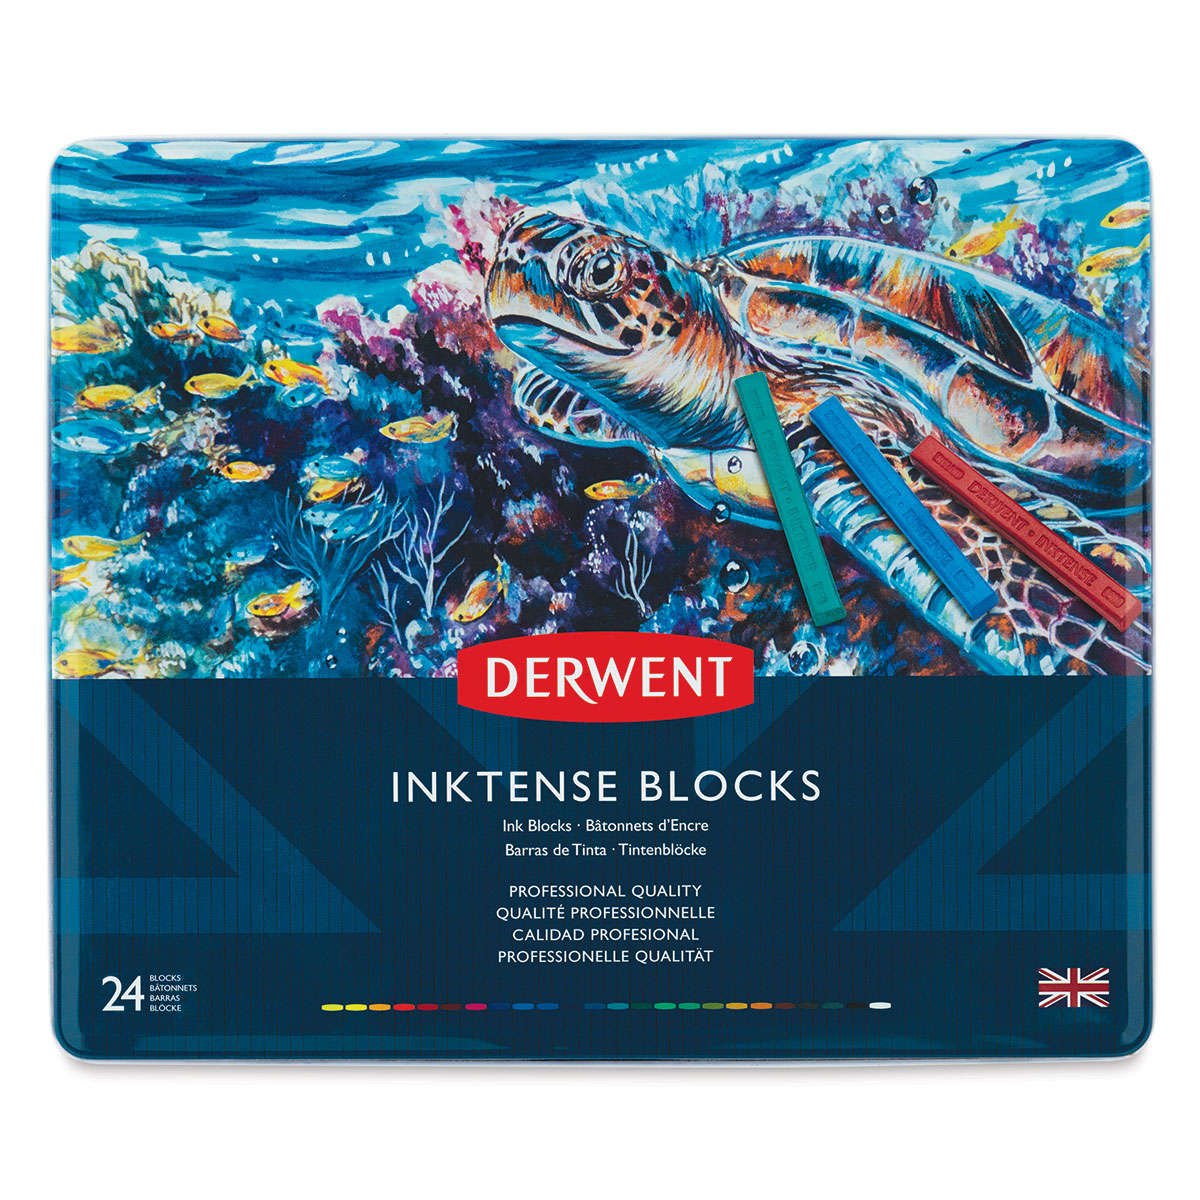 Derwent Inktense Blocks, 24 pack – Artistic Artifacts